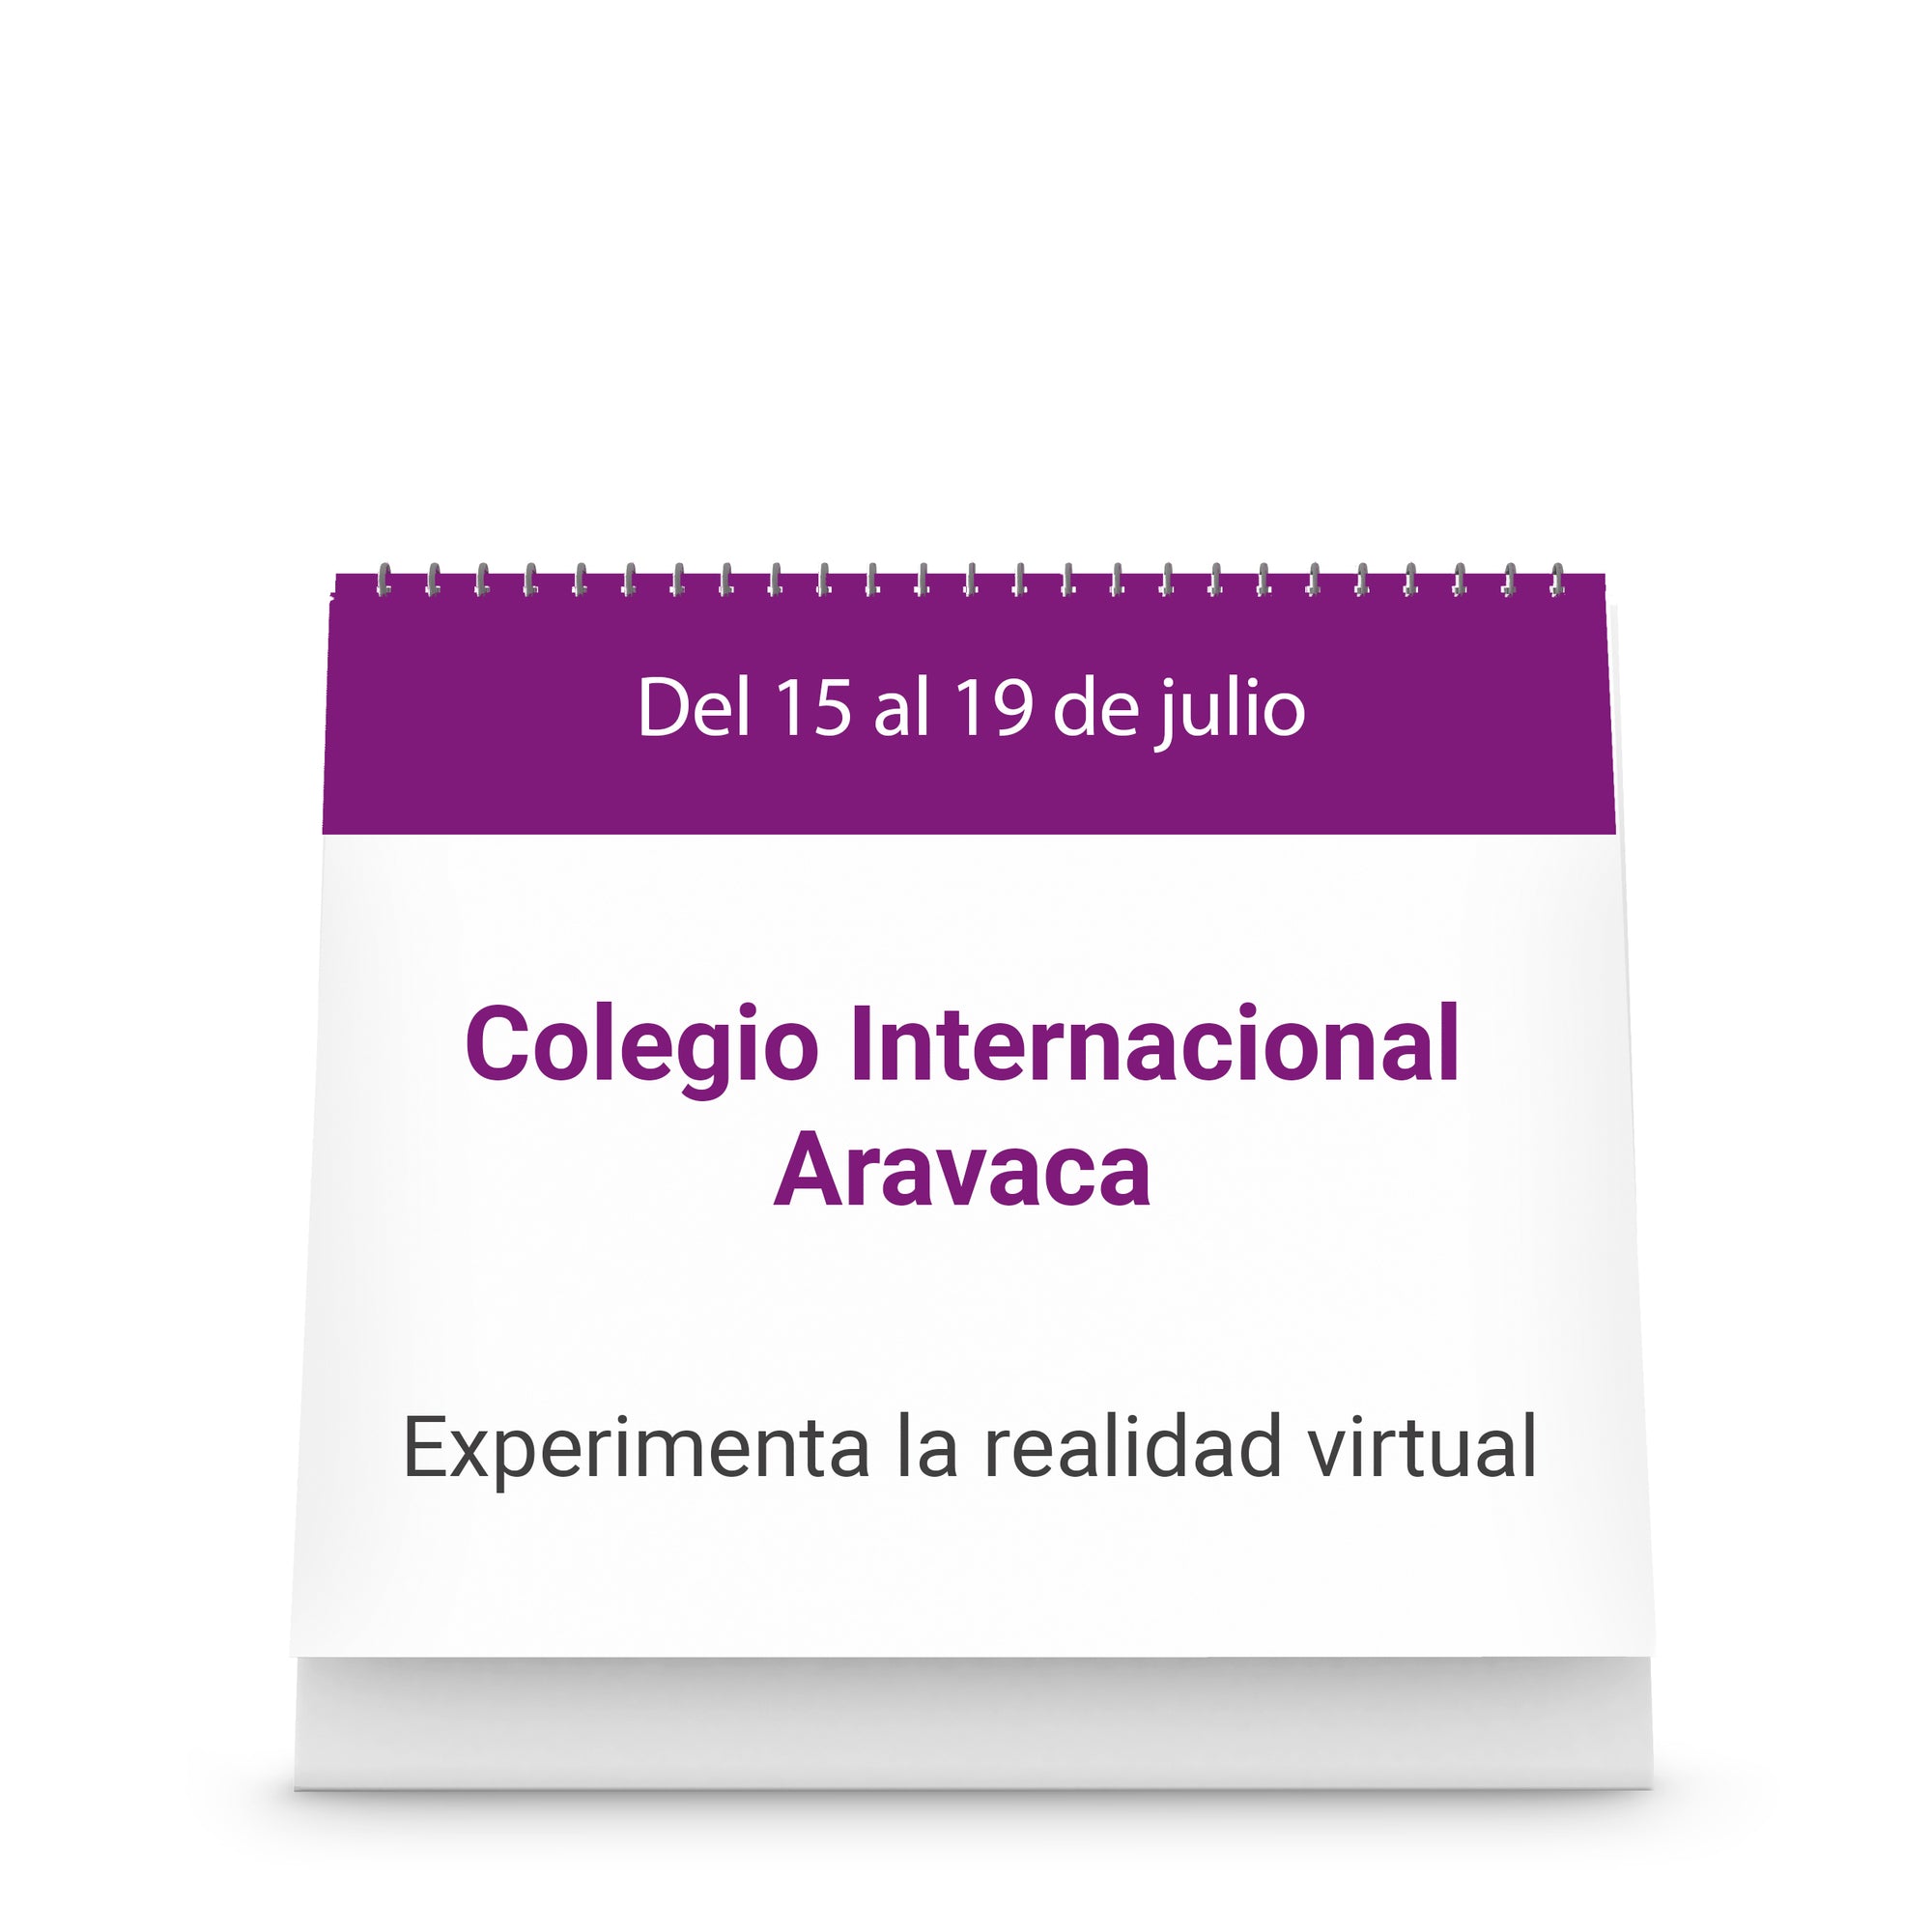 Colegio Internacional Aravaca - Experimenta la realidad virtual